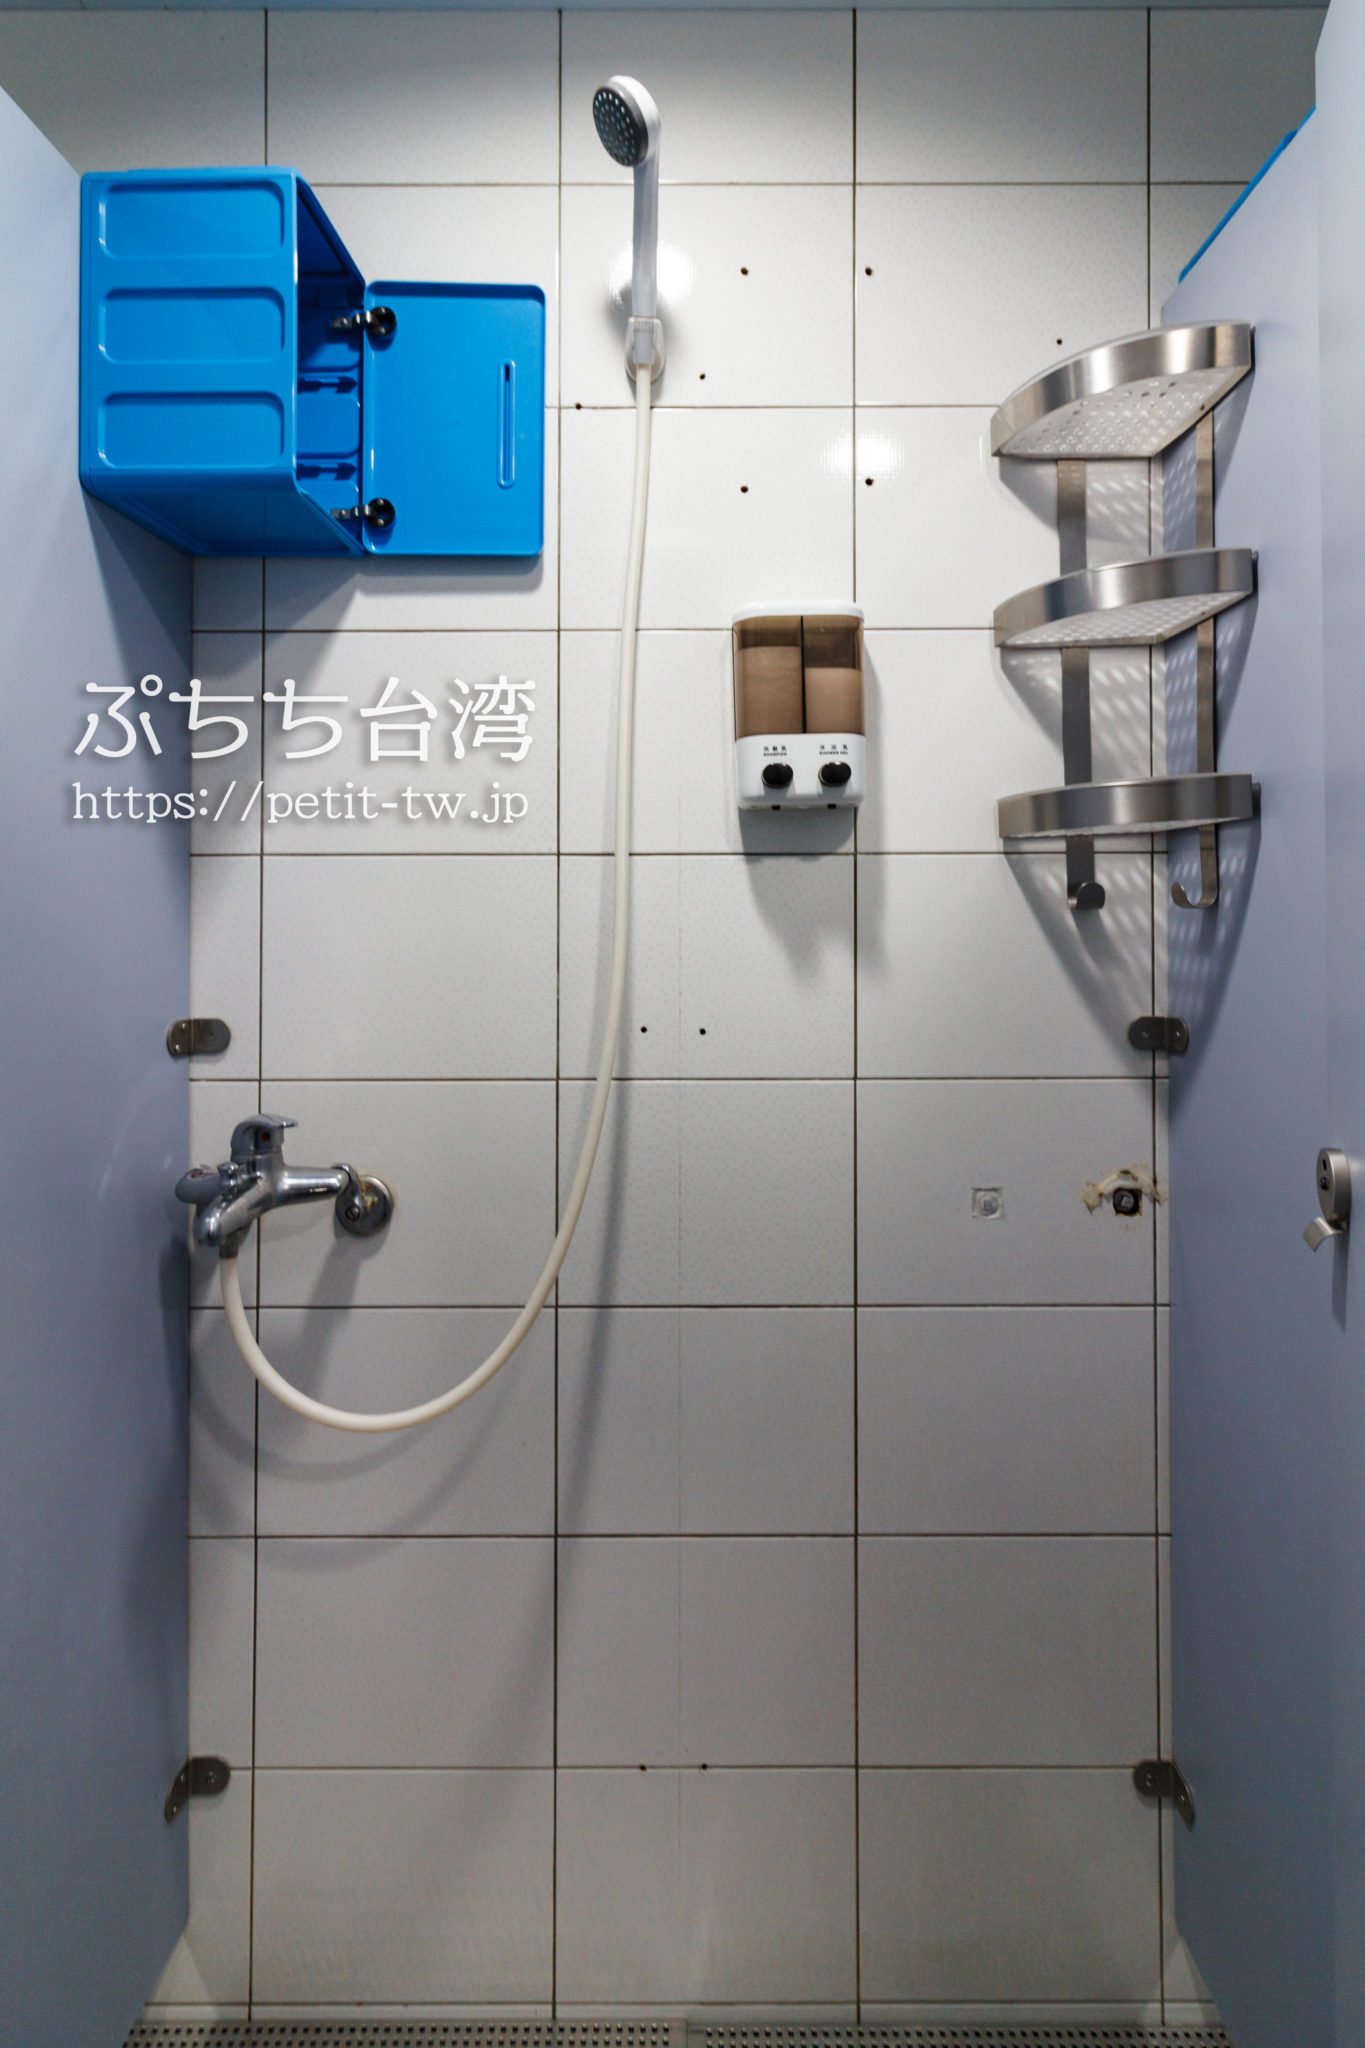 ケイブマンホステル台北のシャワールーム